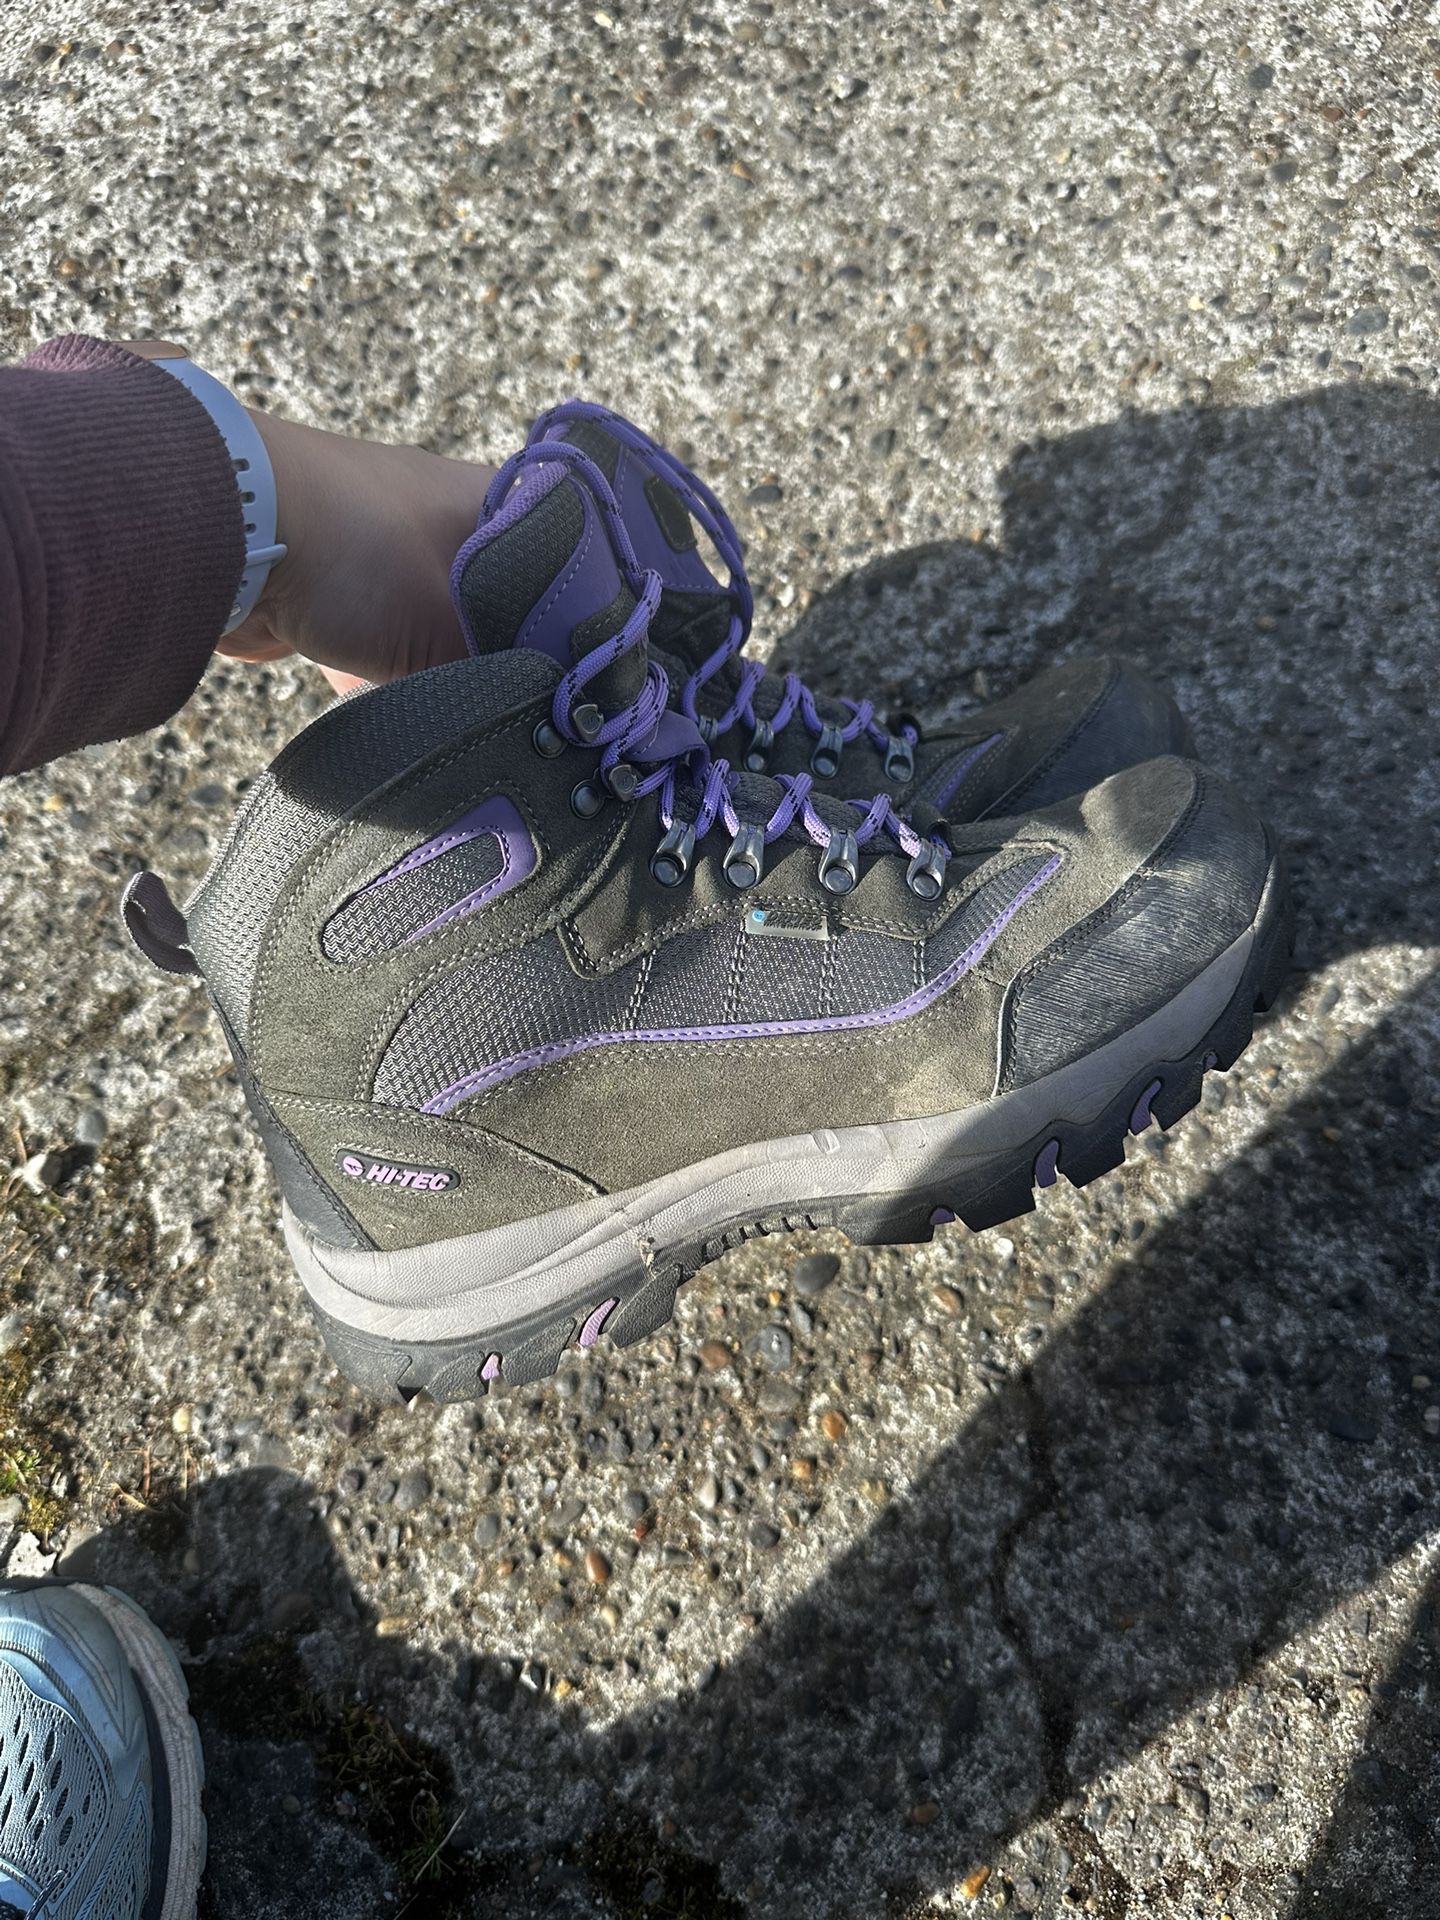 Women’s 9.5 Waterproof Hiking Boots 